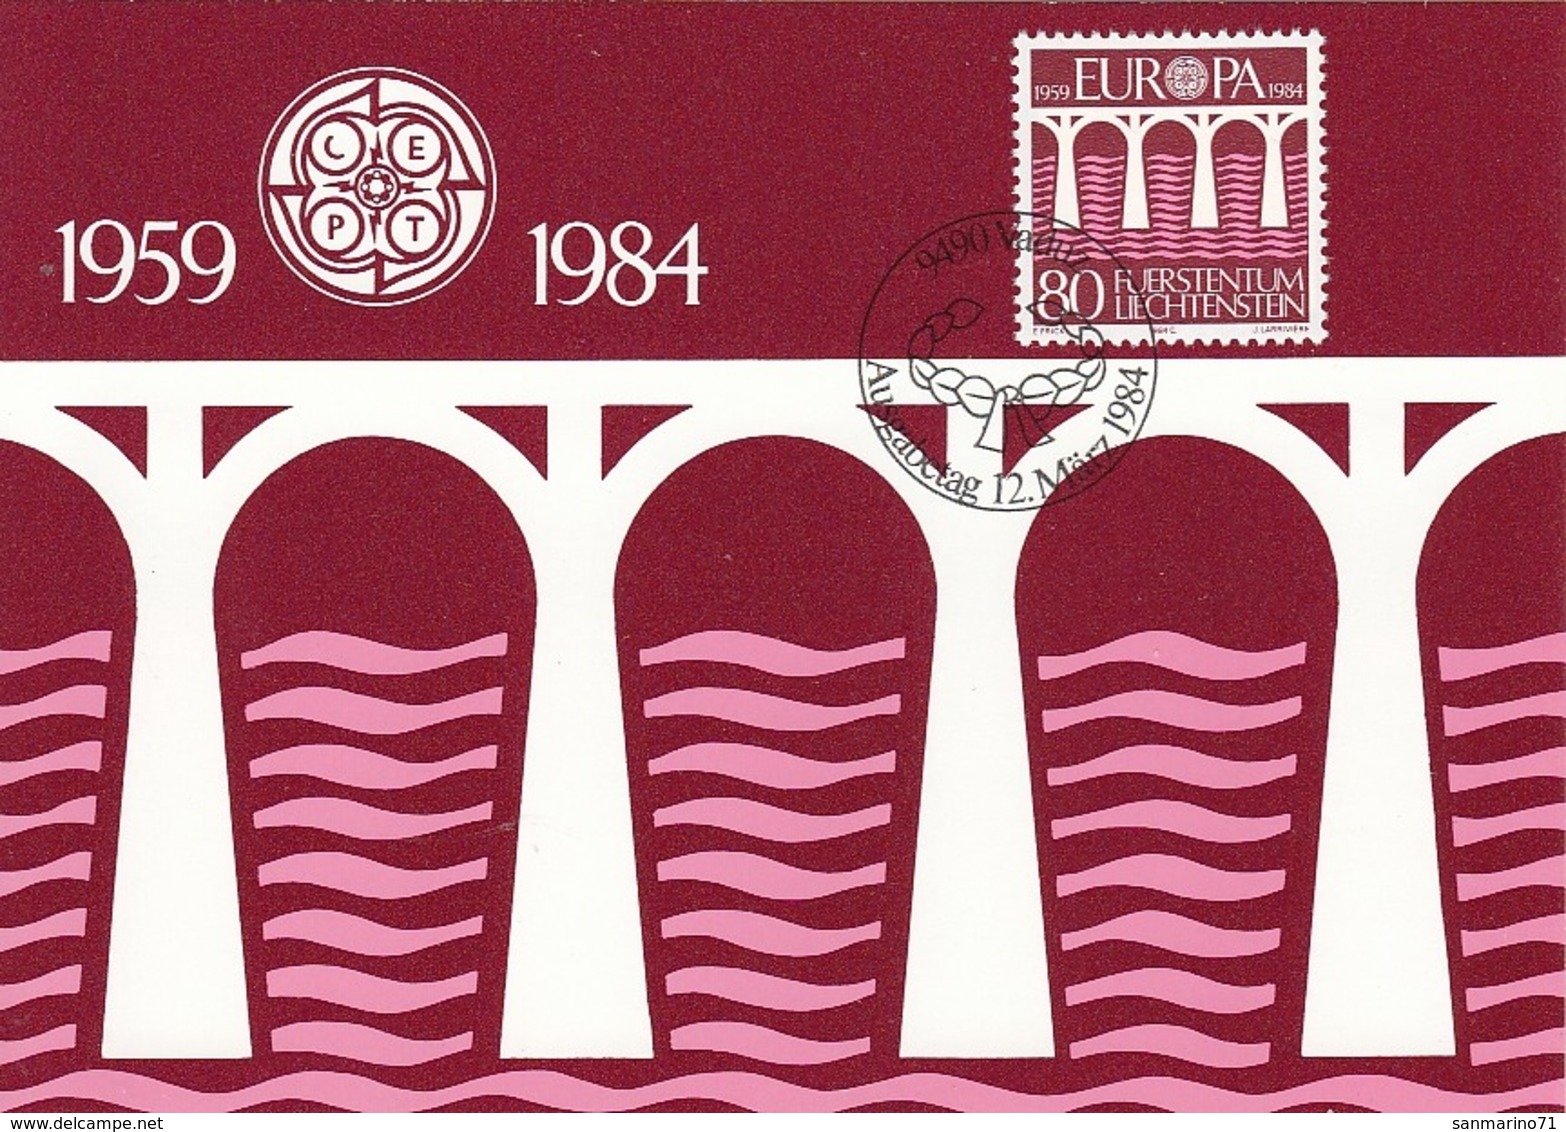 LIECHTENSTEIN Maximum Card 838 - 1984